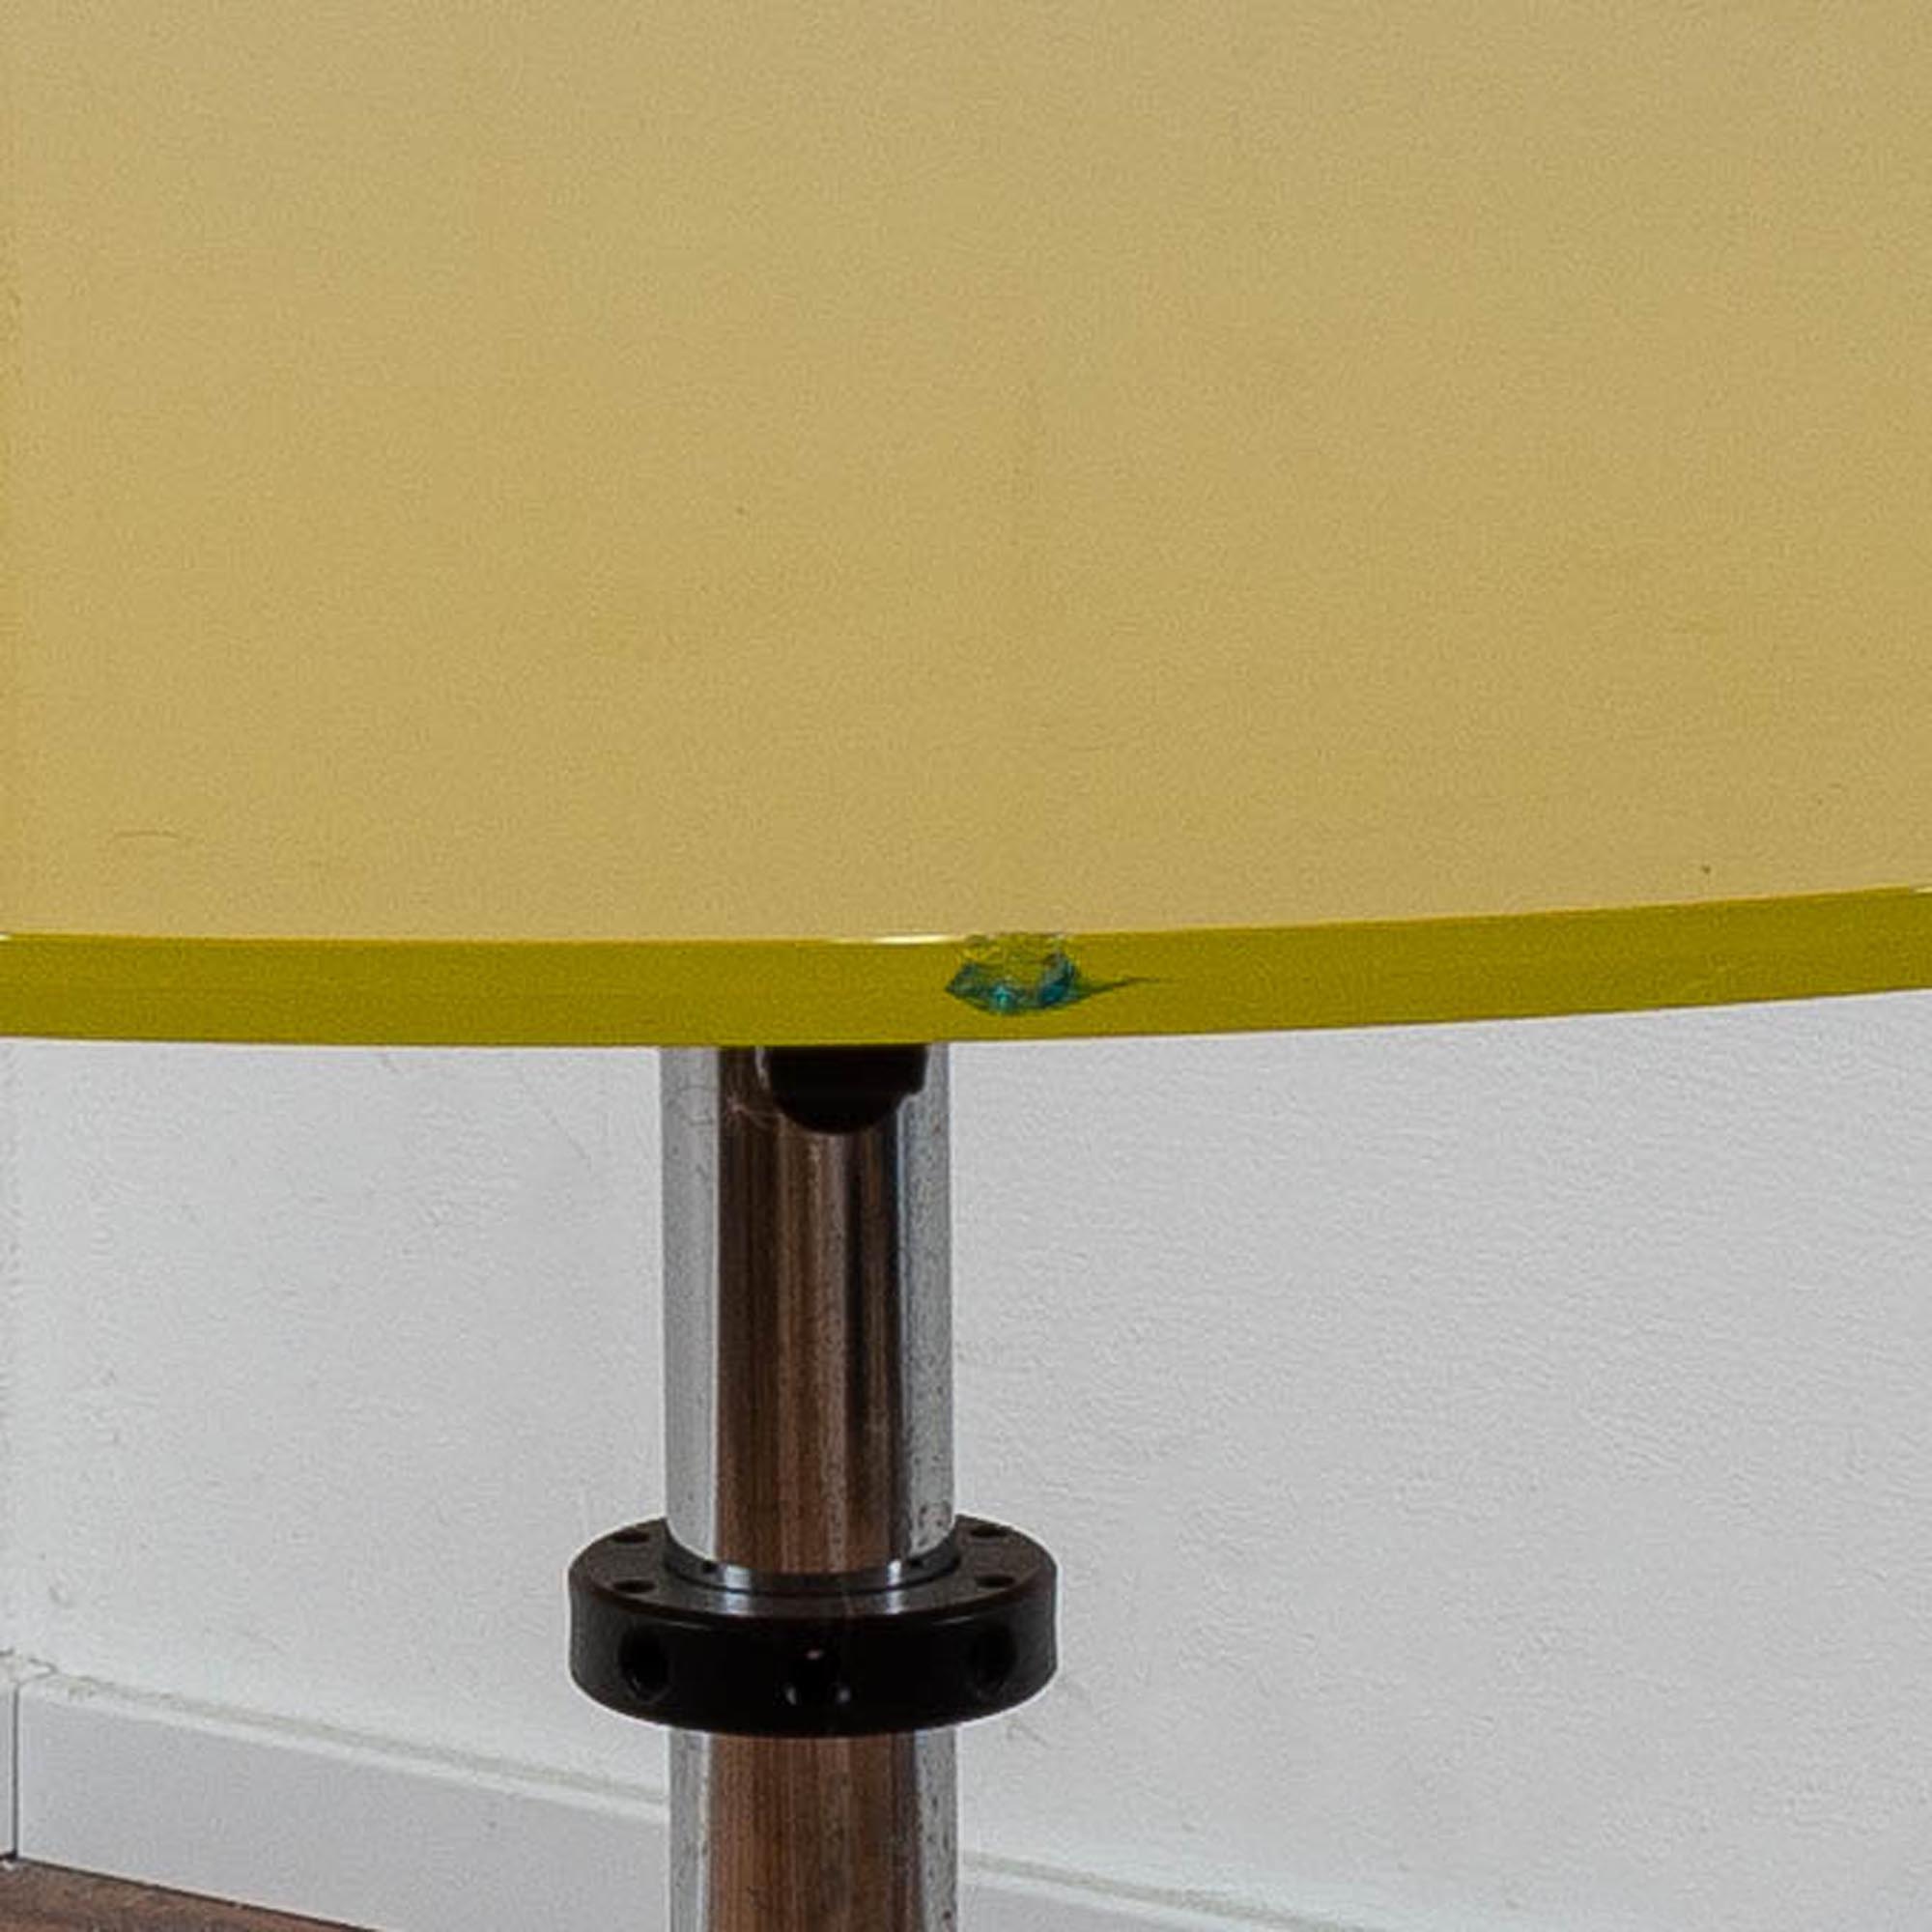 USM "Kitos" Glastisch Ø 110 cm gelb - Chromgestell - beschädigte Glasplatte